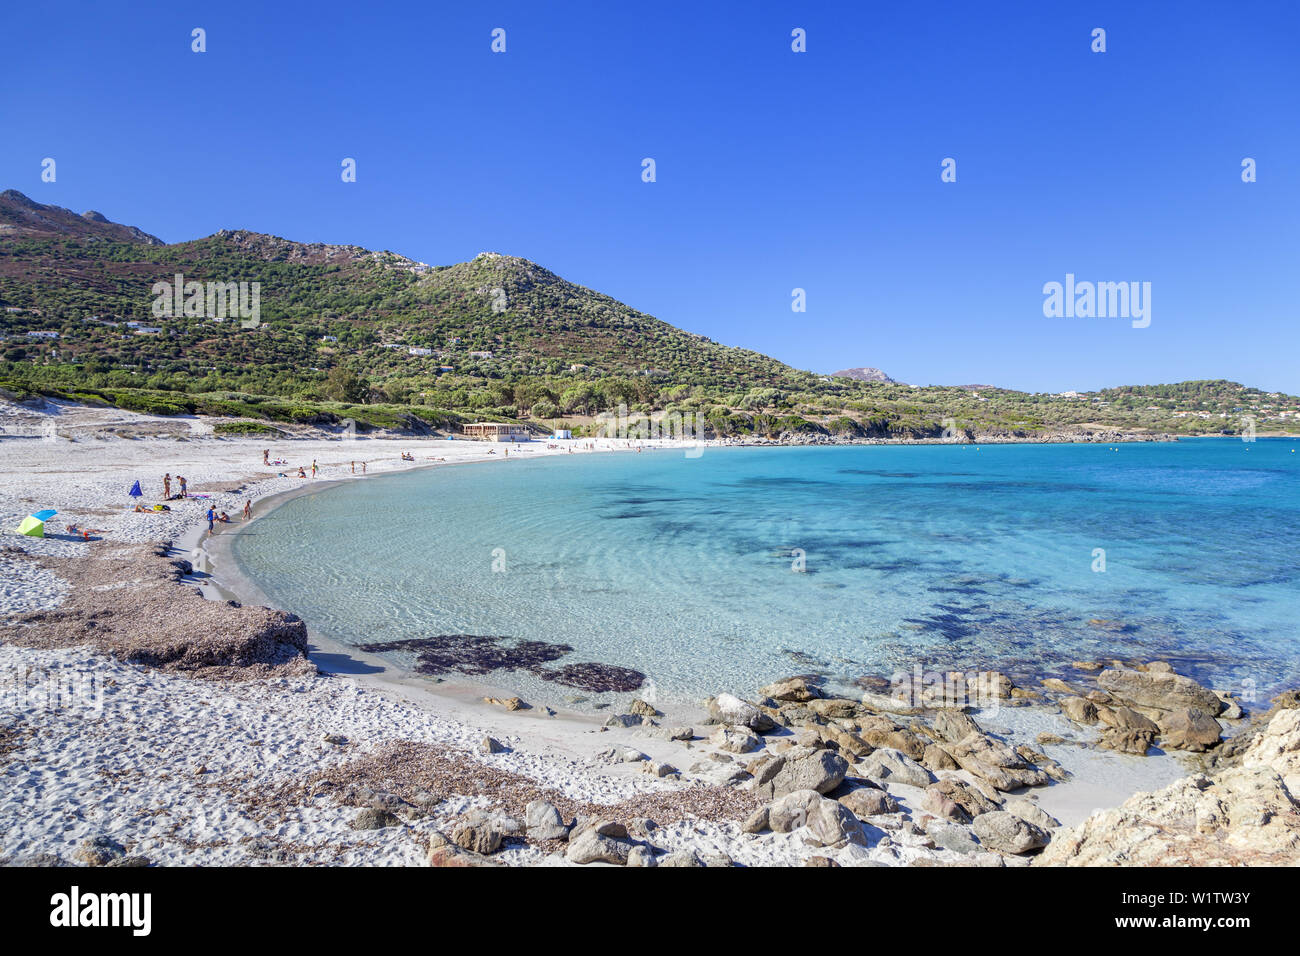 La plage de Bodri, près de l'Ile Rousse, Corse, sud de la France, France, Europe du Sud Banque D'Images